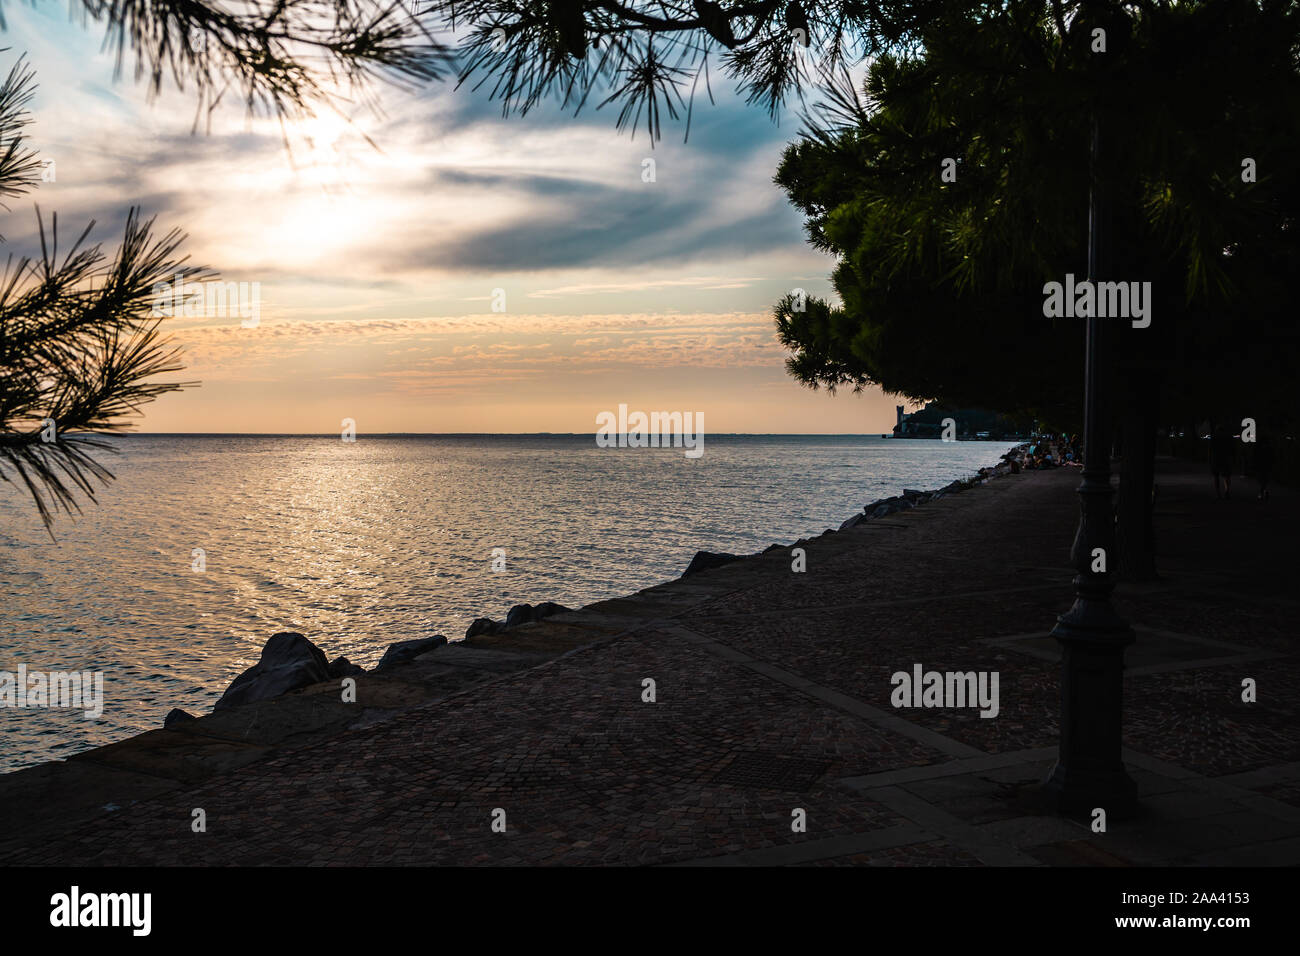 Vista spettacolare della costa del Mare Mediterraneo a Trieste in Italia mentre il tramonto, con il castello di Miramare (Castello di Miramare) in background. Foto Stock